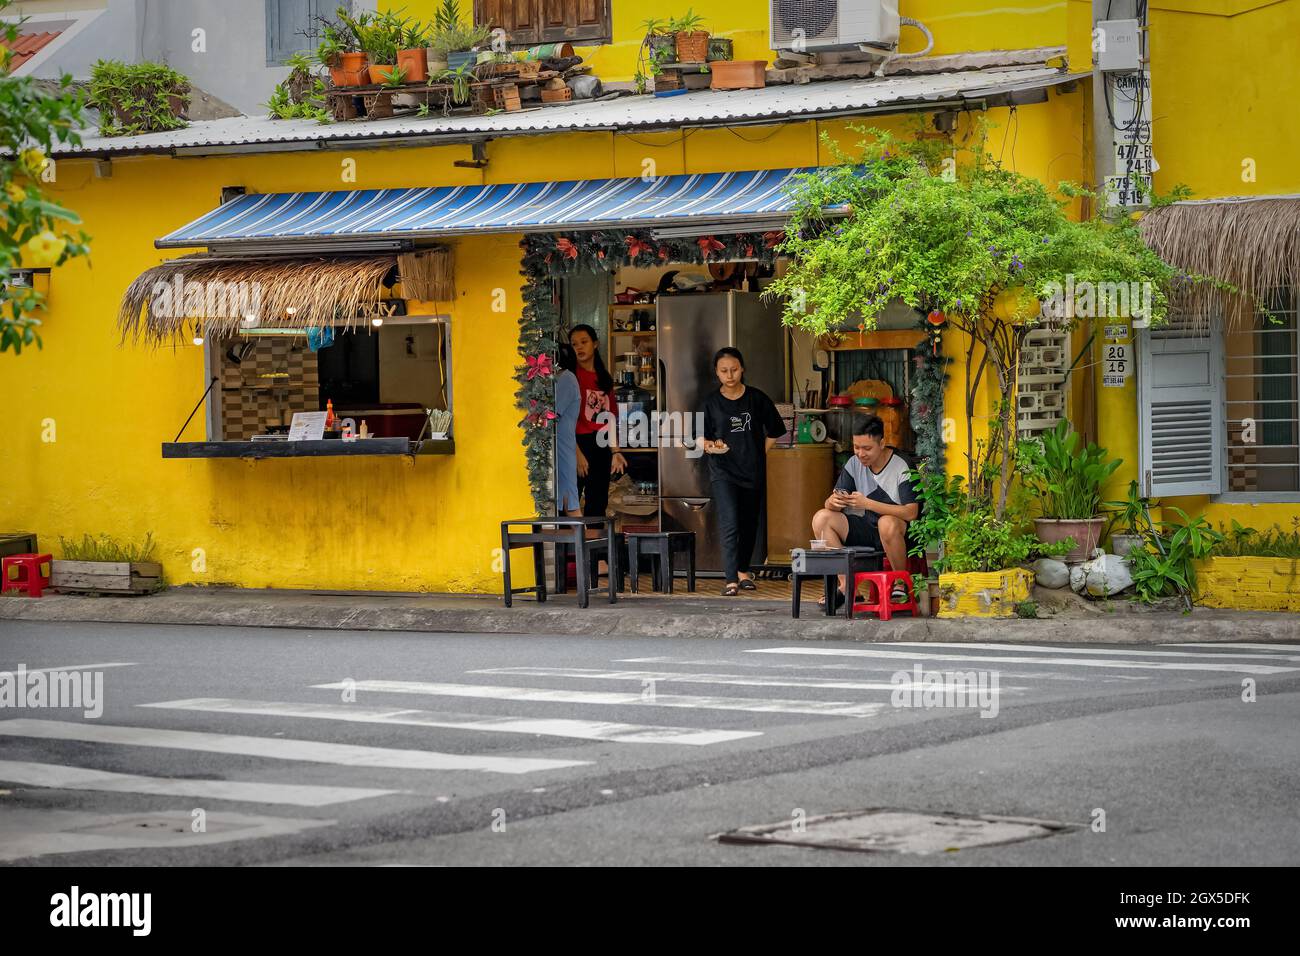 Vietnamesische Straße mit gelb gestrichenen Gebäuden, die mit Blumen geschmückt sind. Kleines Restaurant mit Tischen an der Straße. Nha Trang, Vietnam: 2020-10-23 Stockfoto